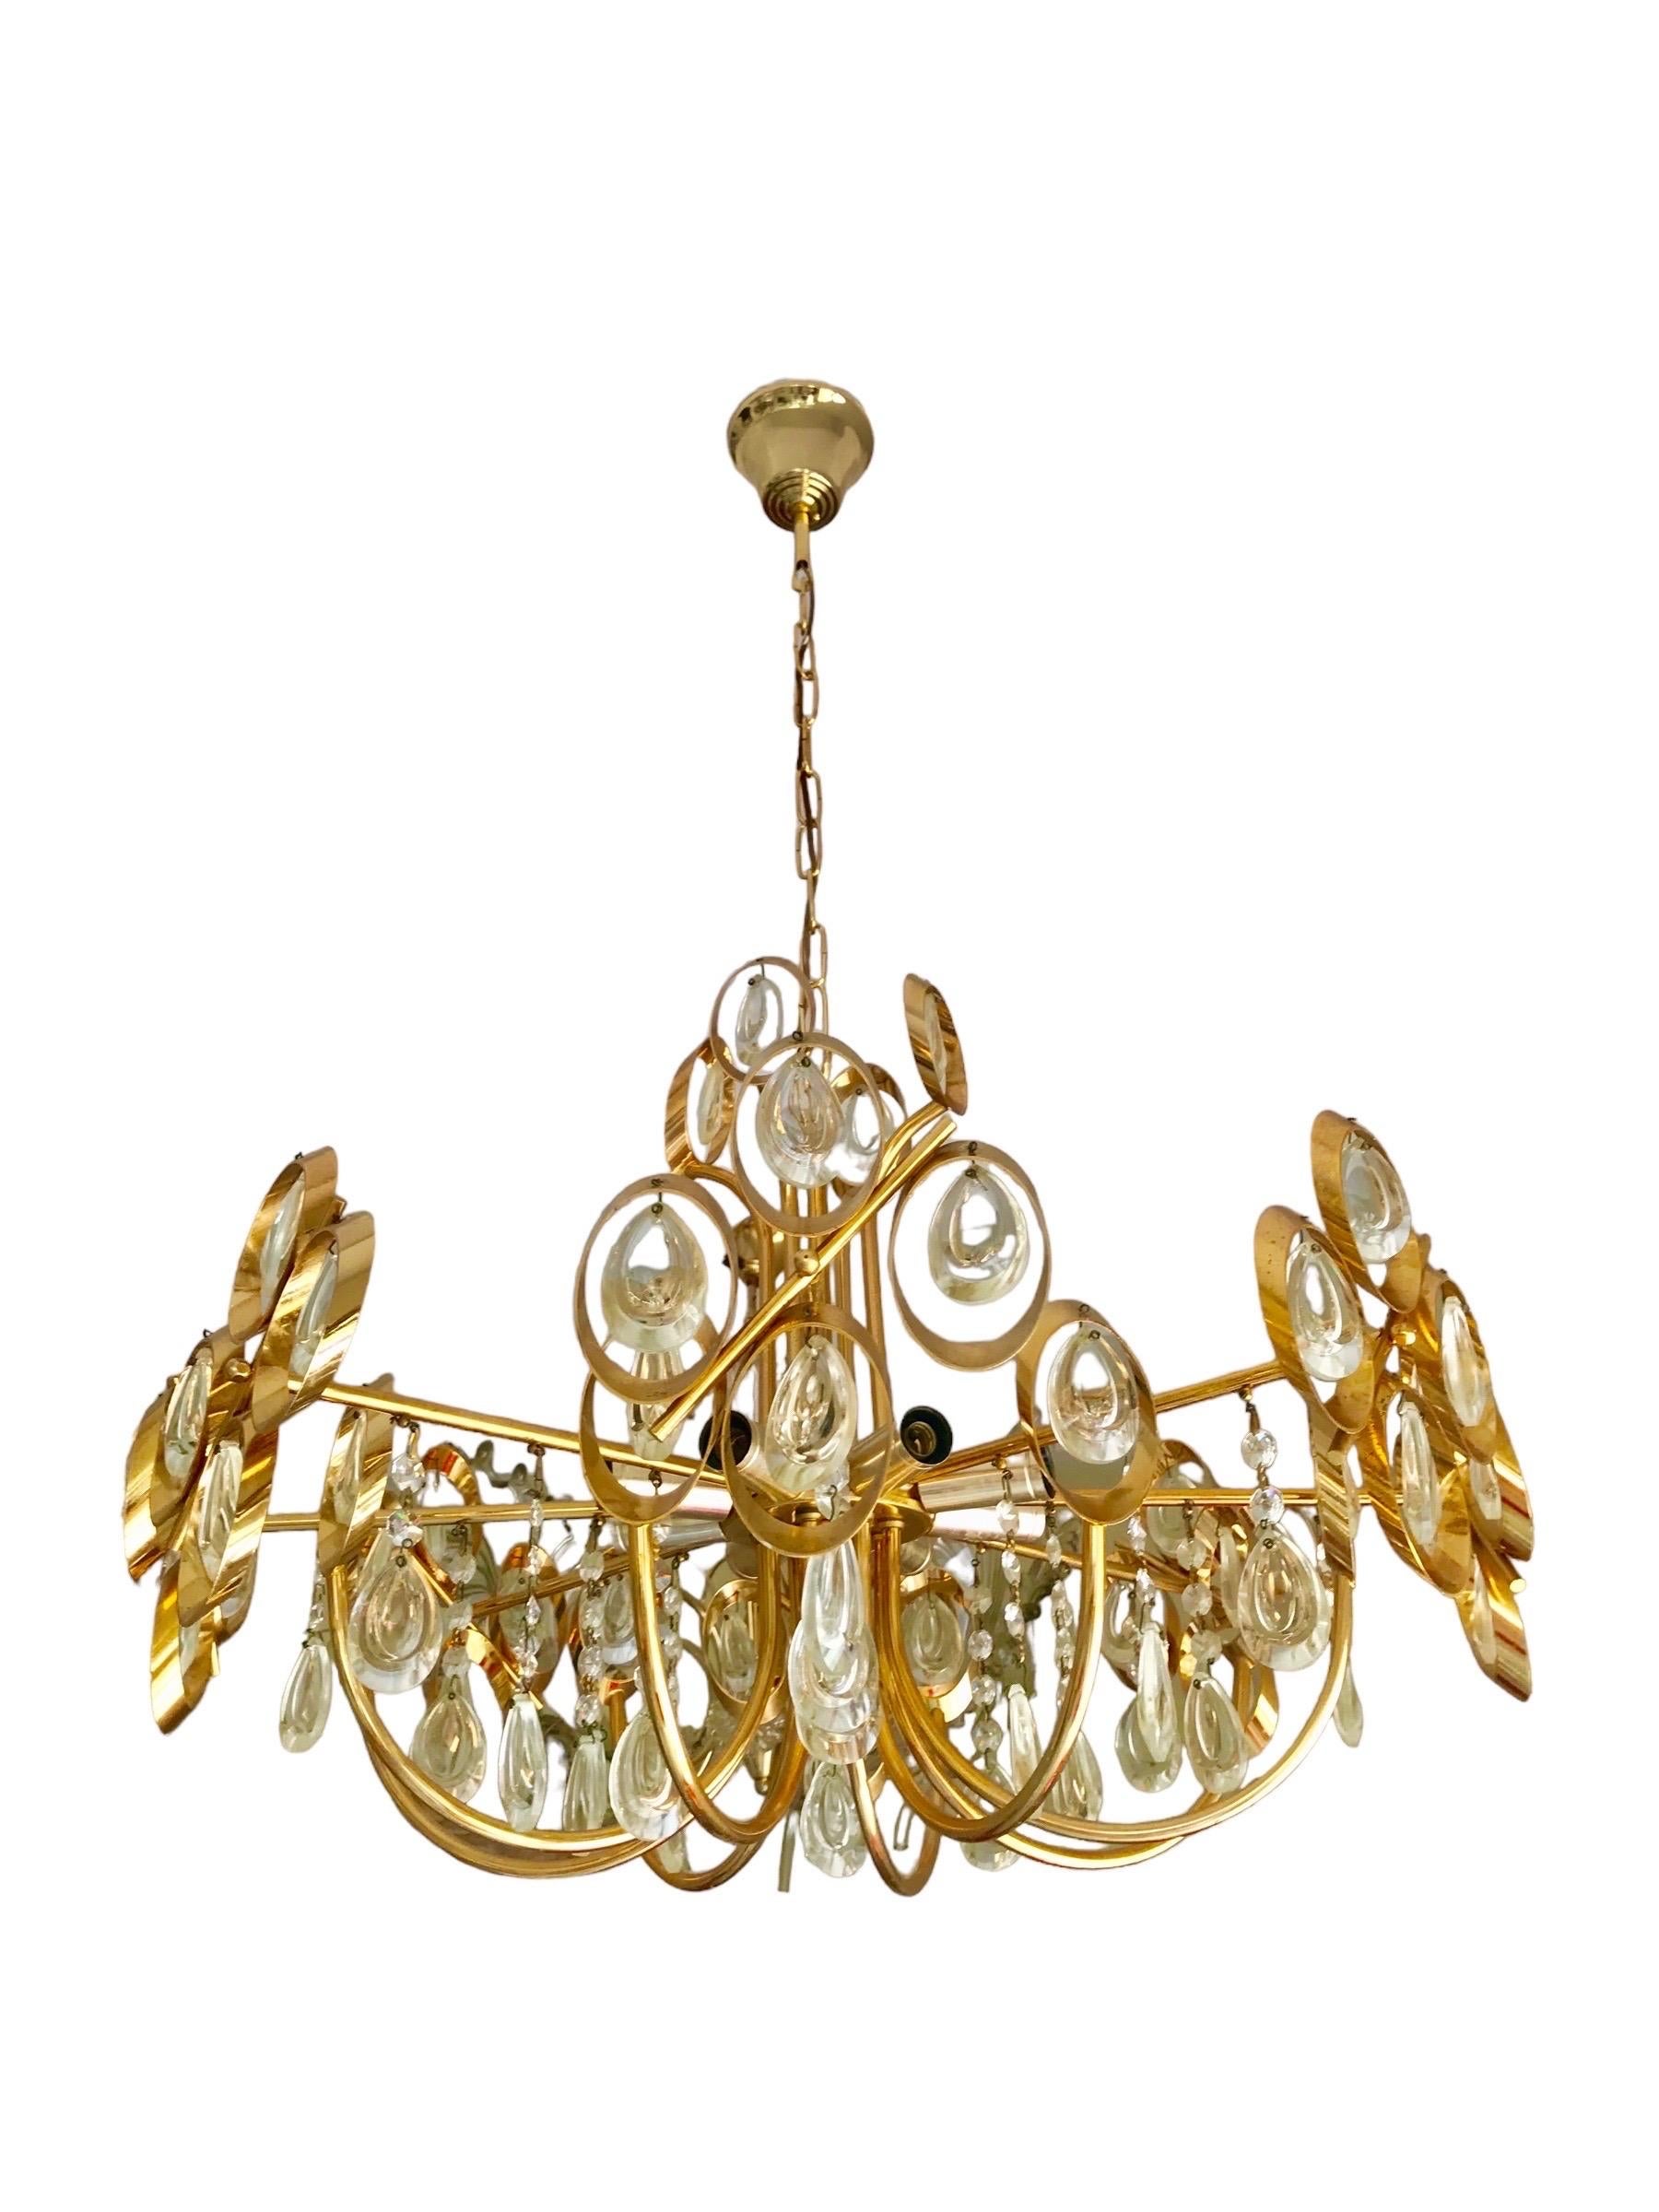 Italian Gaetano Sciolari chandelier gilt gold structure period 1970s For Sale